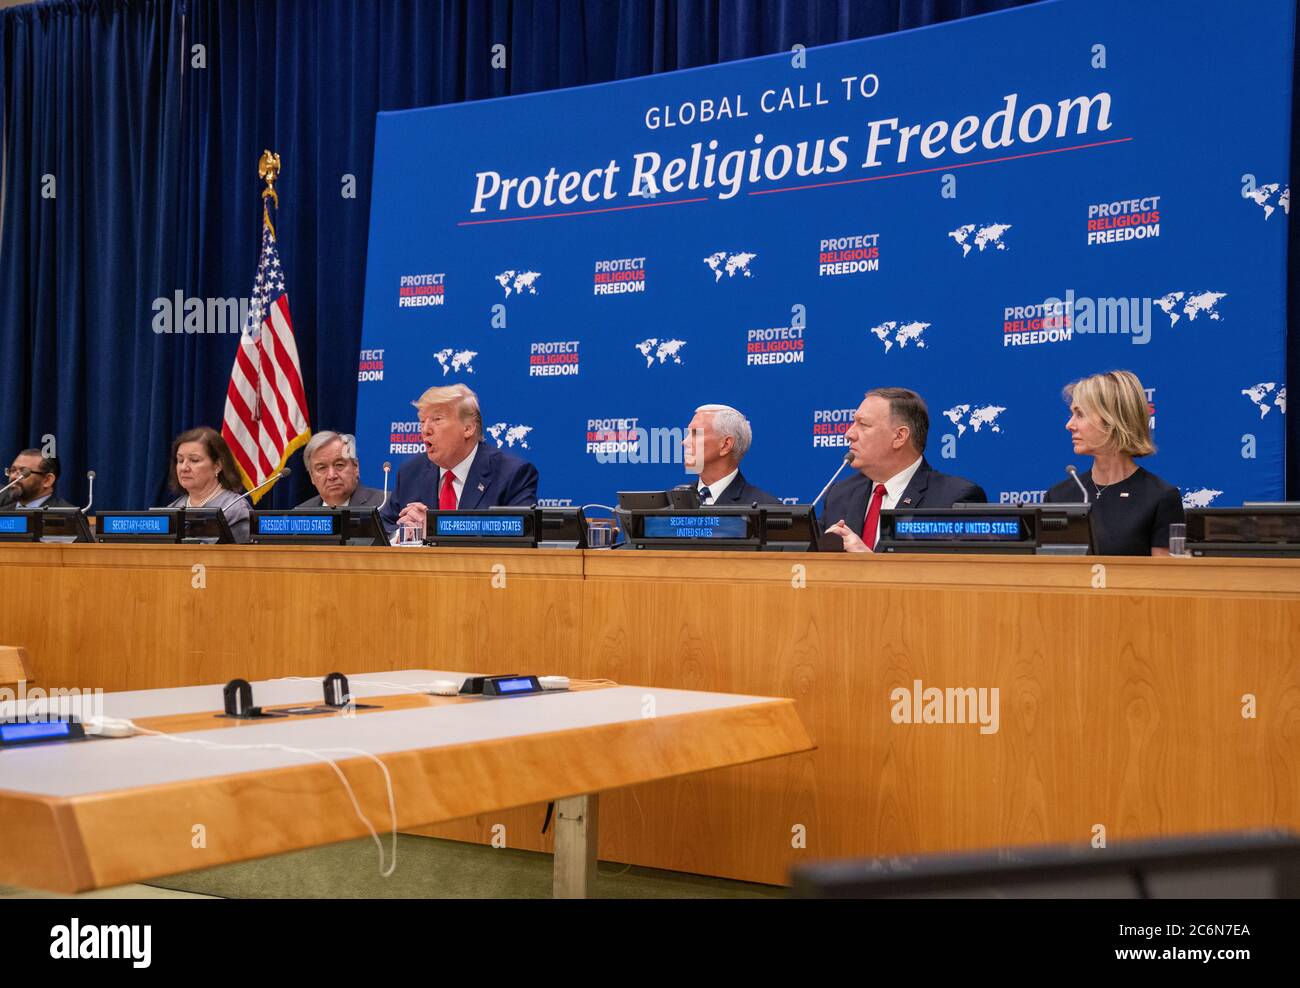 US-Präsident Donald Trump hält am 23. September 2019 bei der Veranstaltung der Vereinten Nationen über Religionsfreiheit in New York, New York, Rede Stockfoto